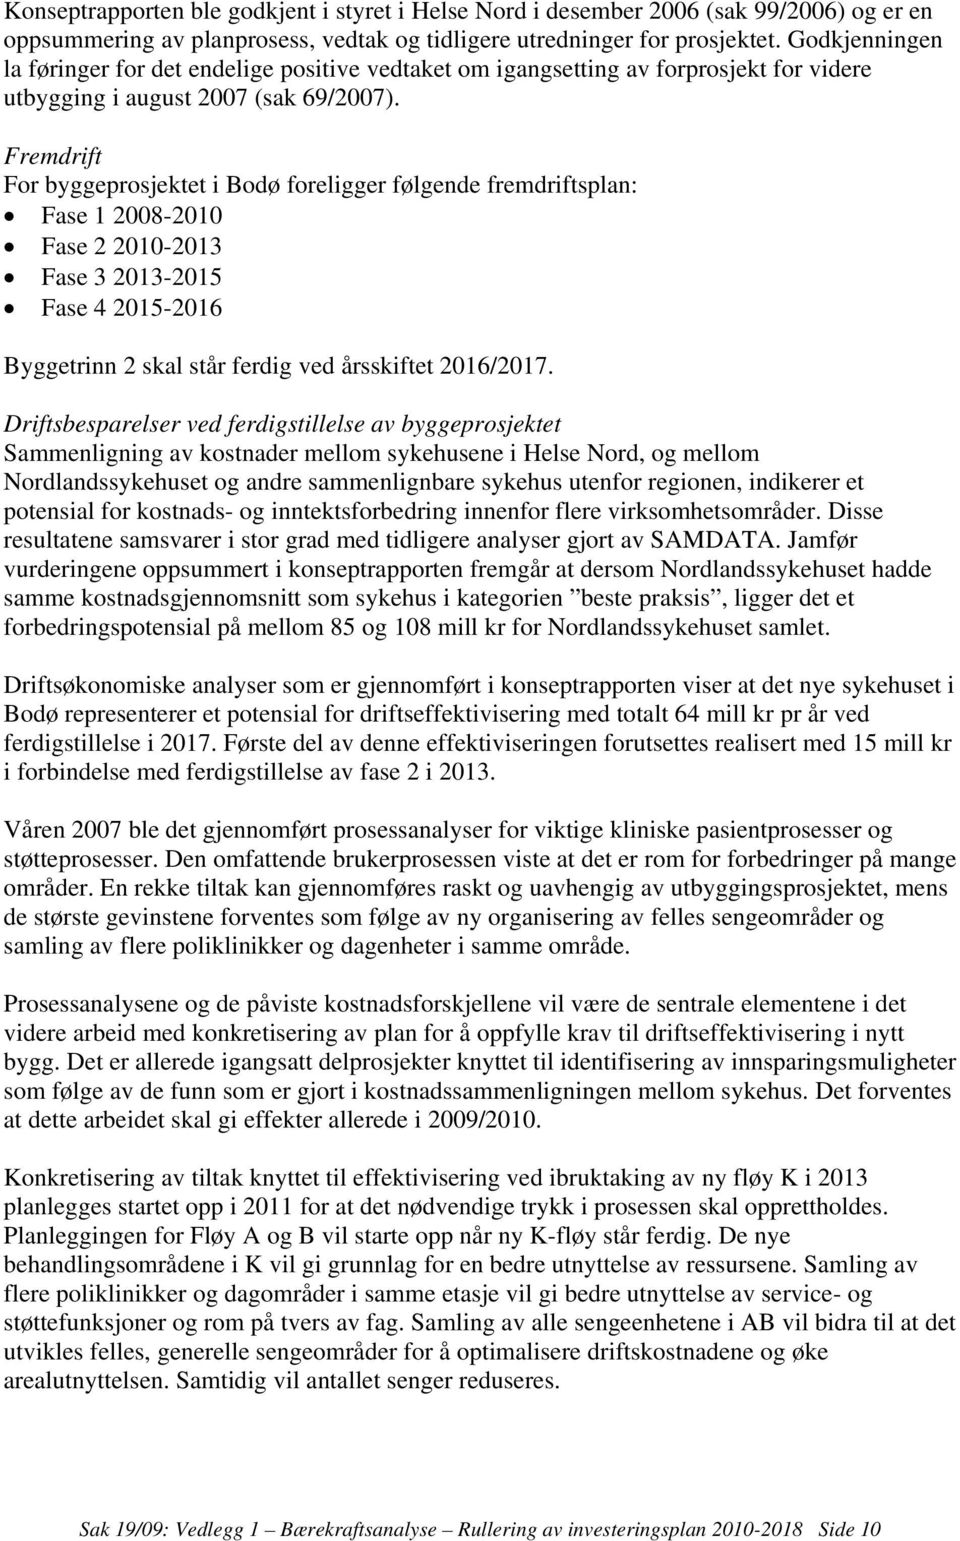 Fremdrift For byggeprosjektet i Bodø foreligger følgende fremdriftsplan: Fase 1 2008-2010 Fase 2 2010-2013 Fase 3 2013-2015 Fase 4 2015-2016 Byggetrinn 2 skal står ferdig ved årsskiftet 2016/2017.